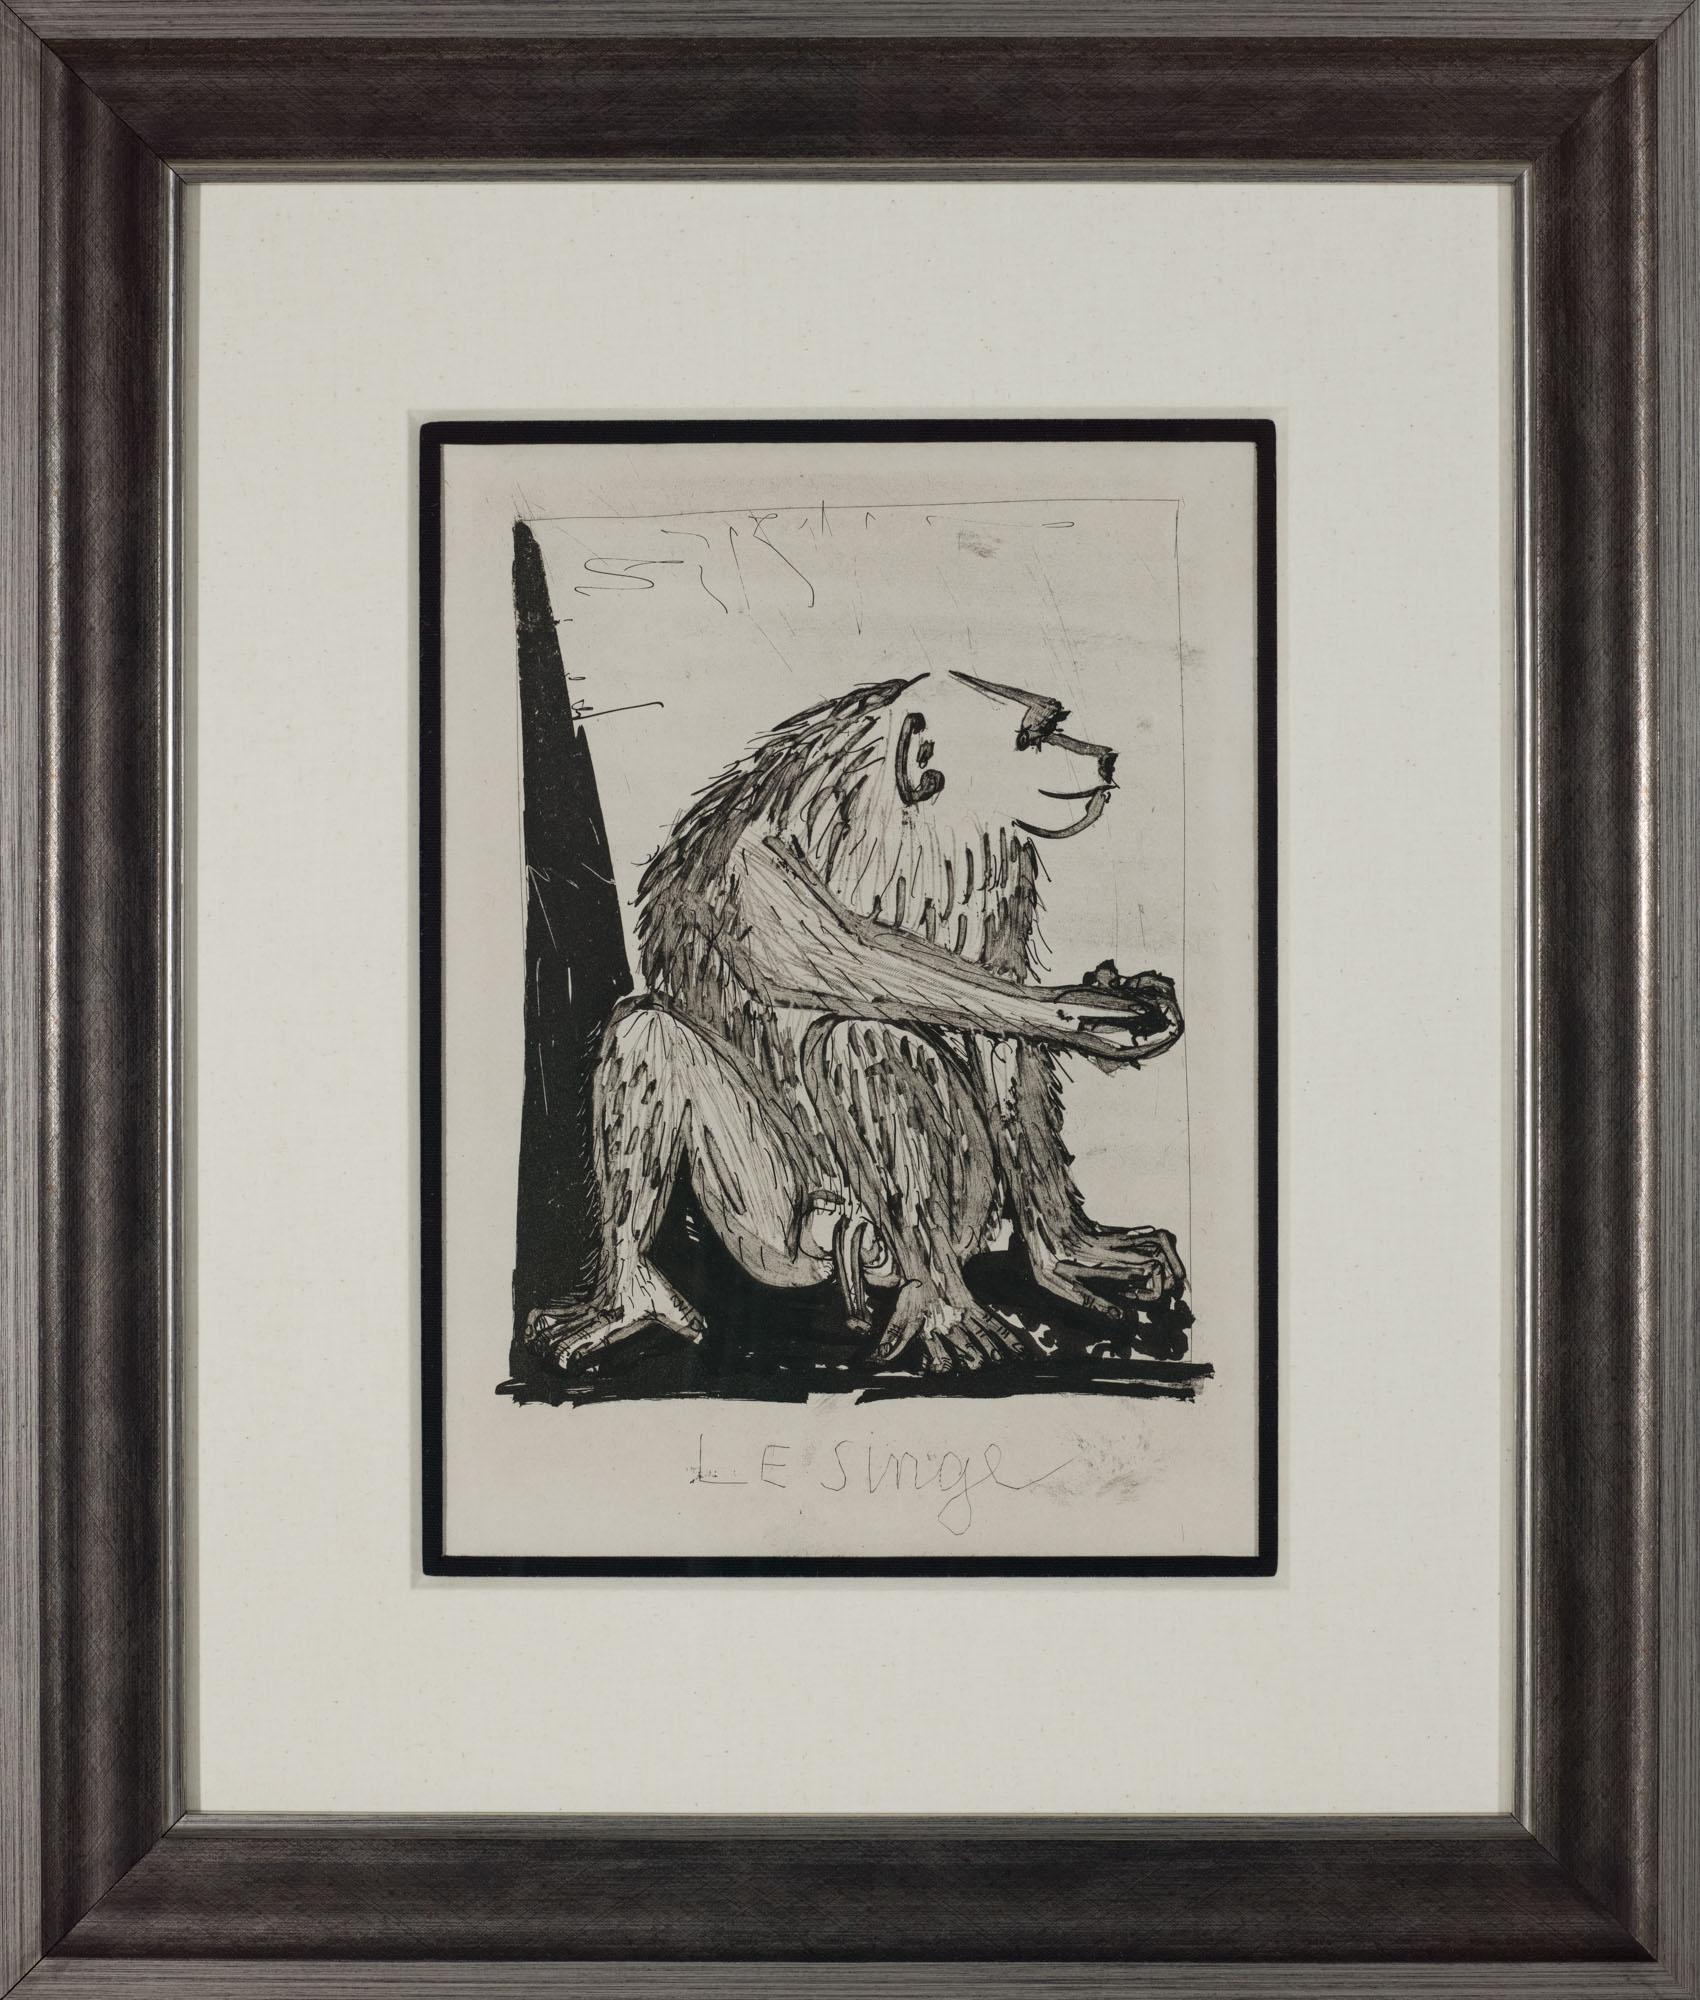 Le singe, 1942 (Histoire Naturelle - Textes de Buffon, B.339) - Print de Pablo Picasso